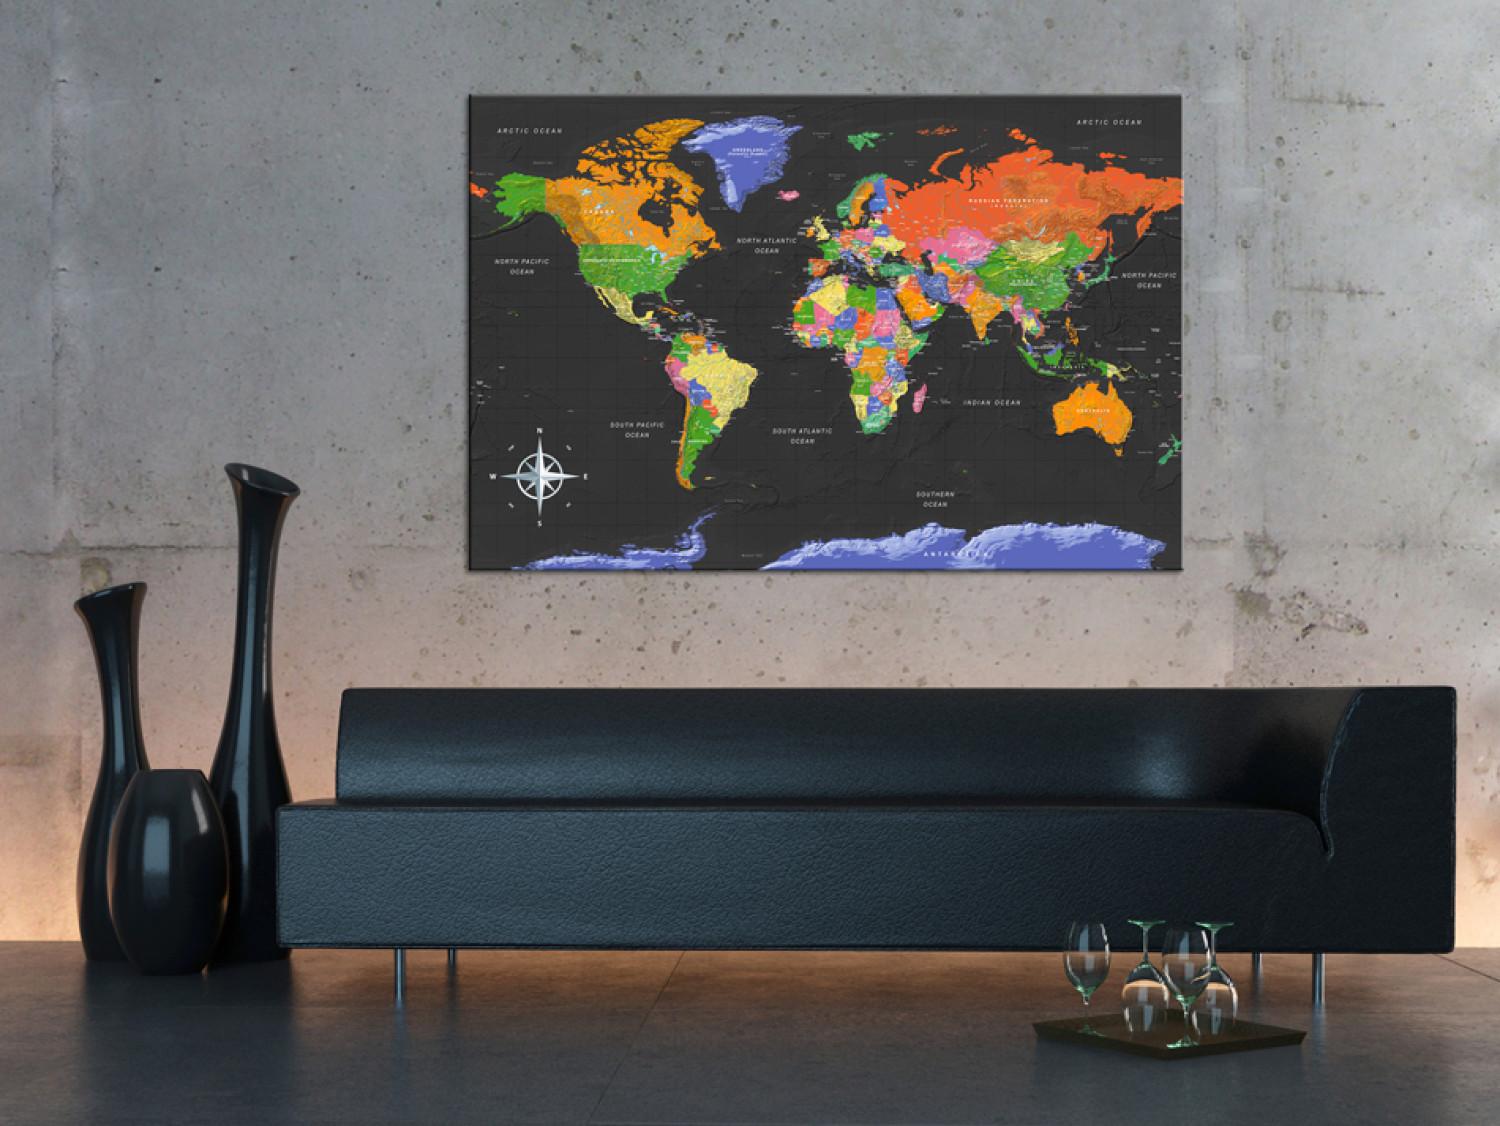 Tablero decorativo en corcho World Map: Dark Depth [Cork Map]